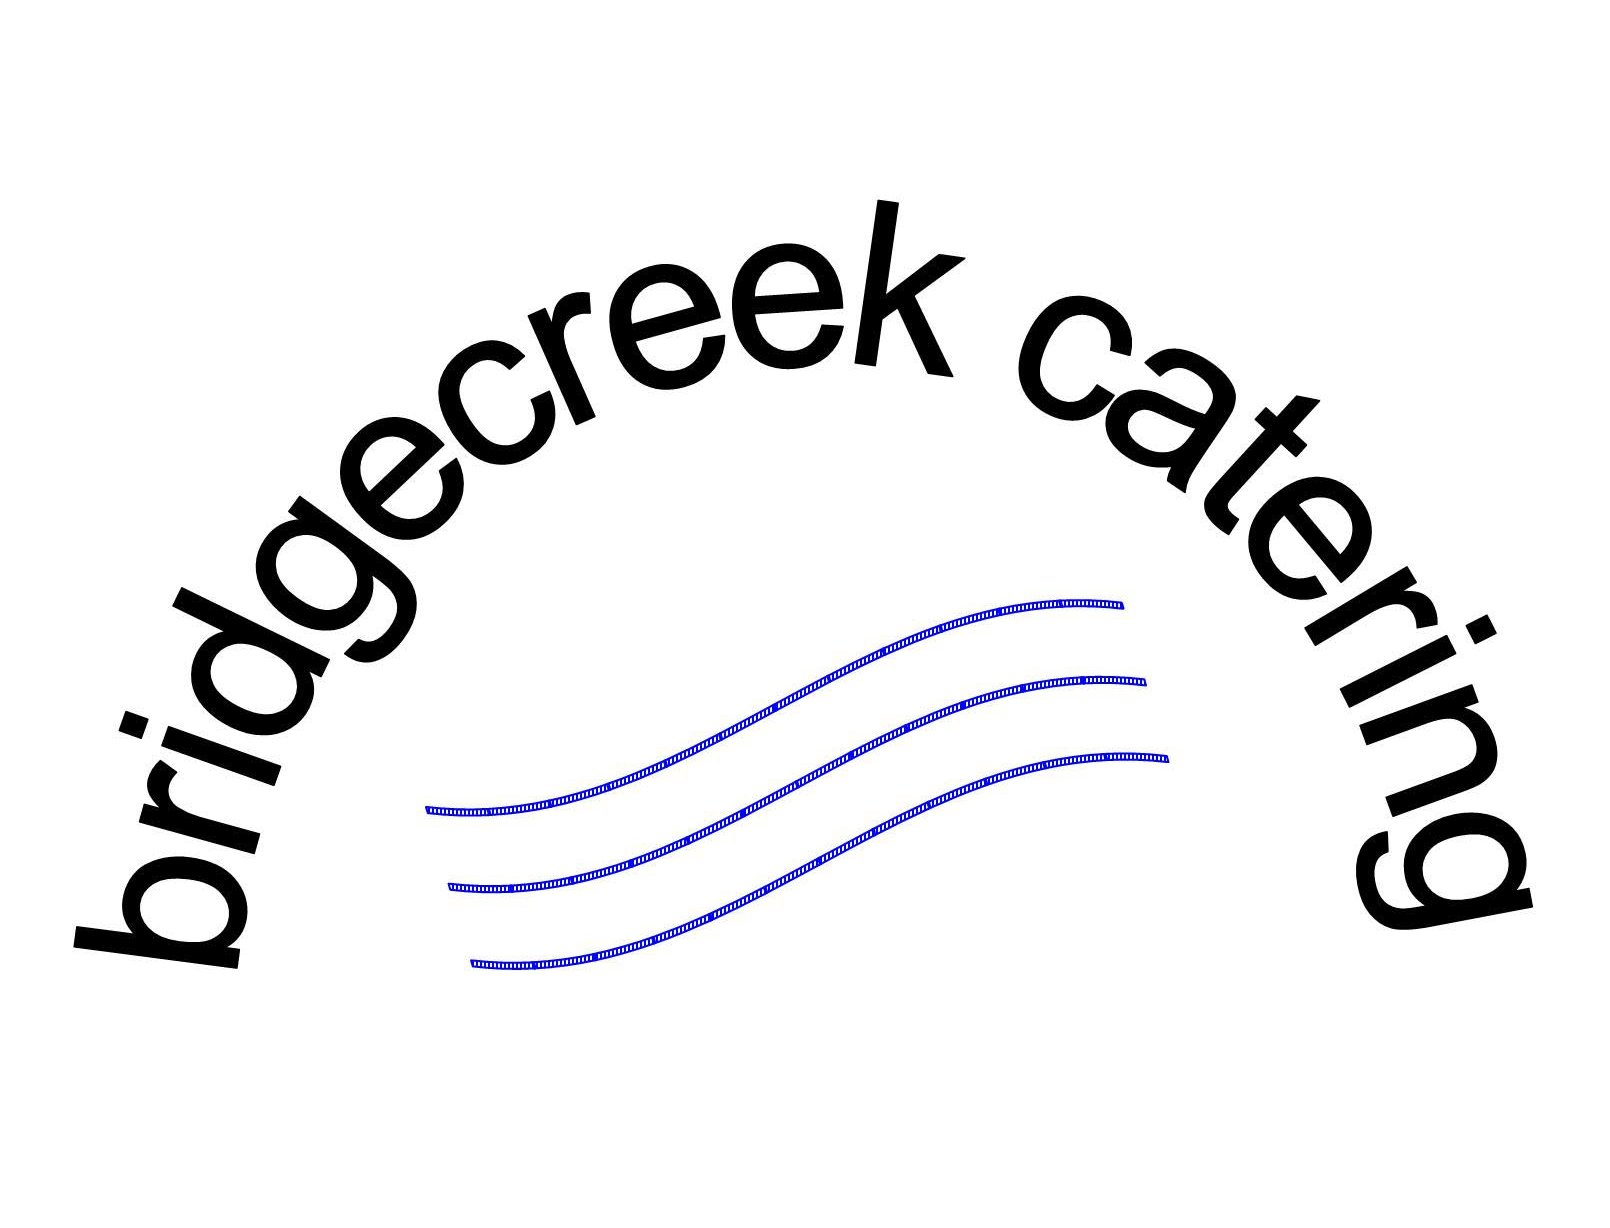 Bridge Creek Catering